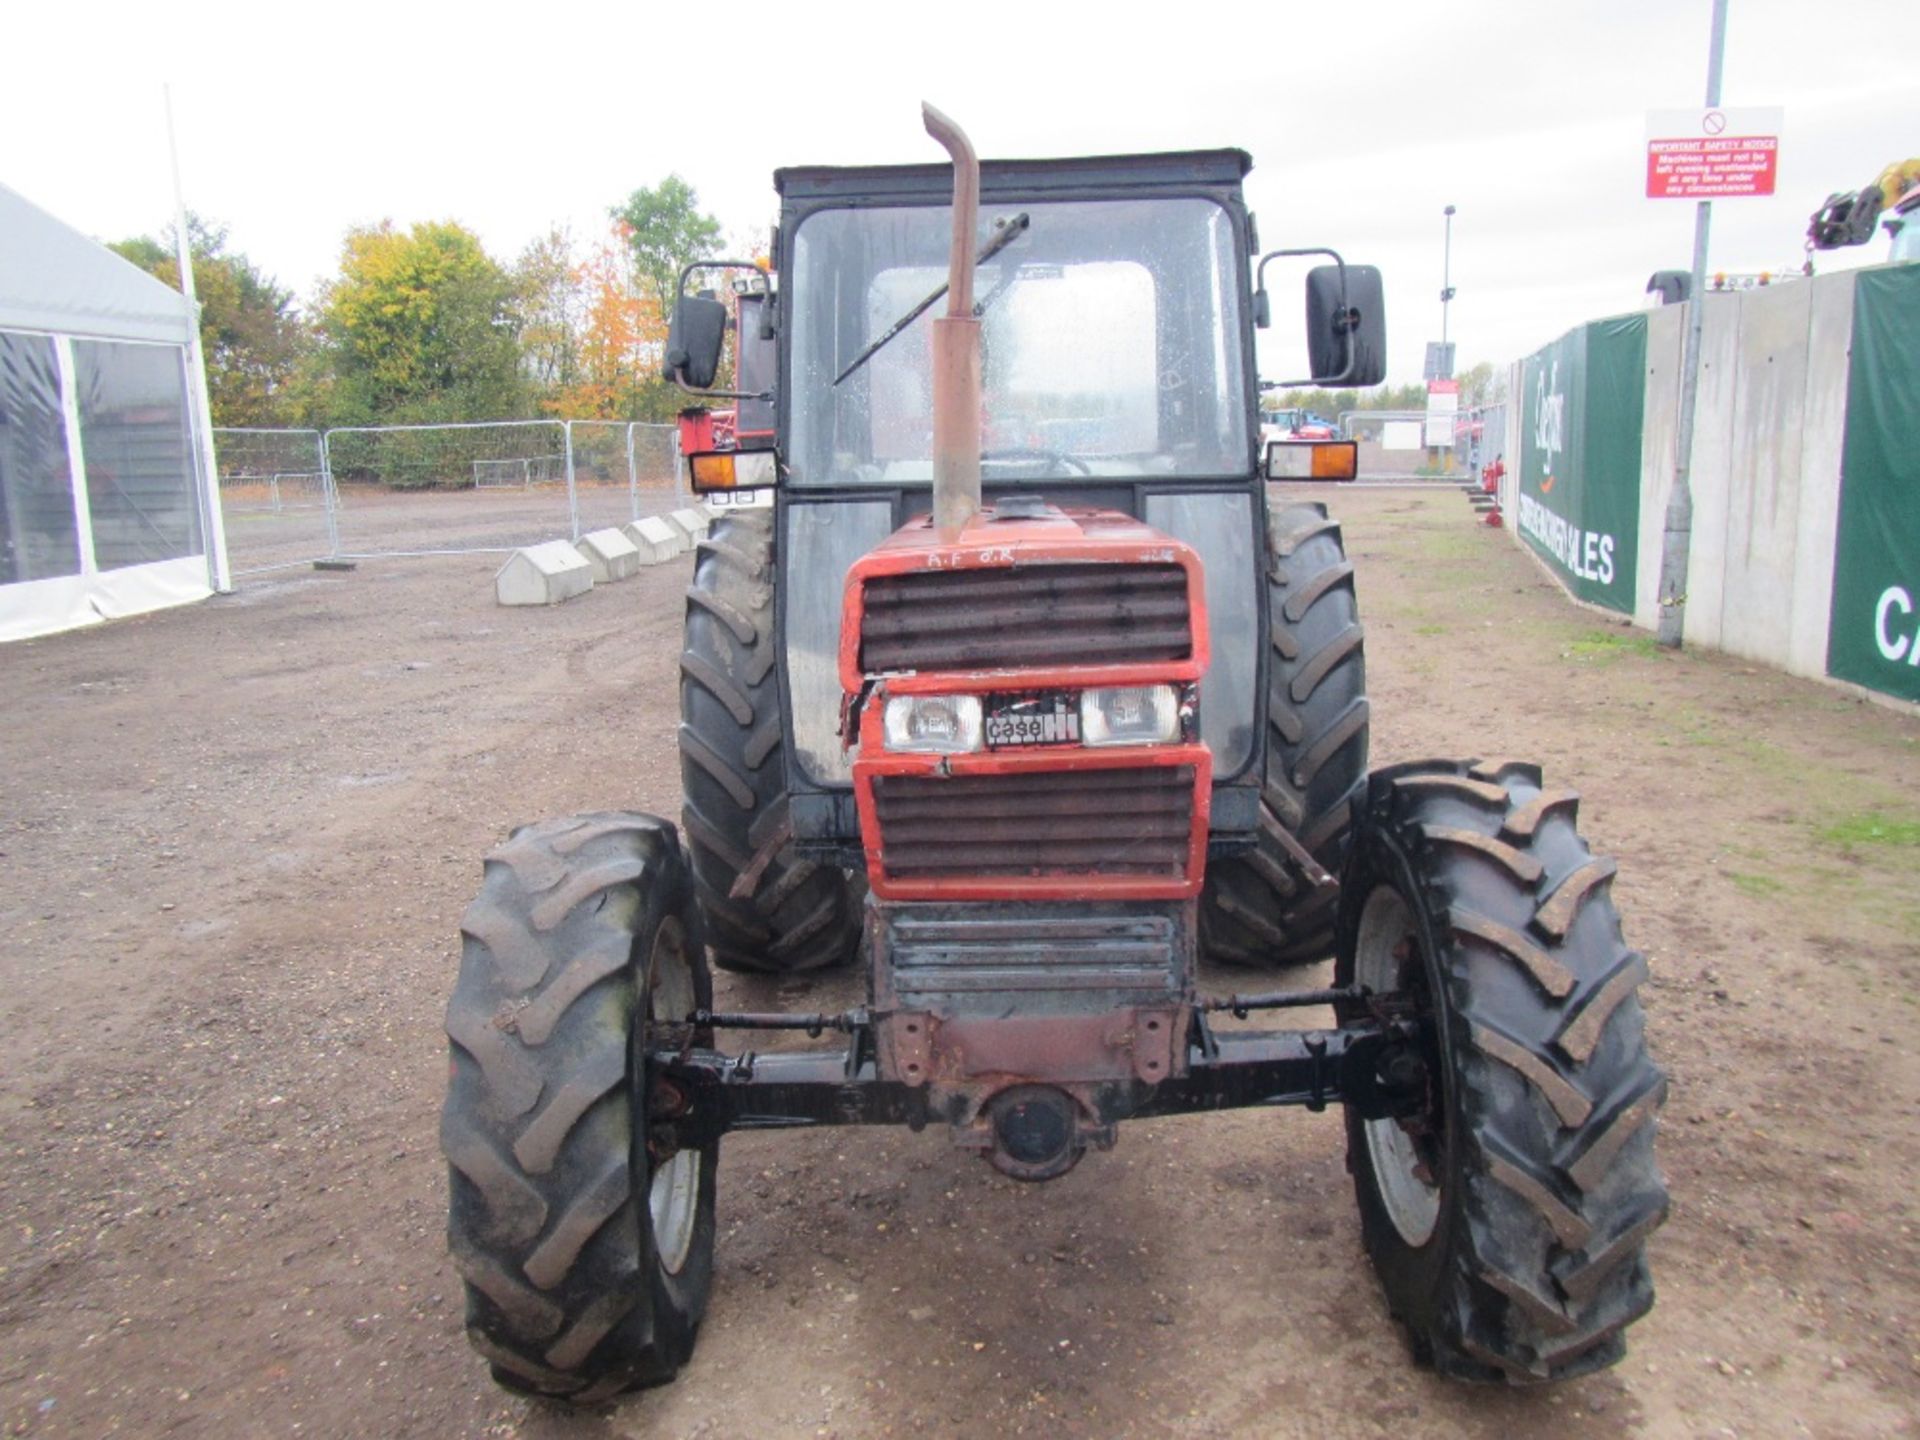 Case International 885 LP 4wd Tractor Reg No D310 HVF - Image 2 of 13